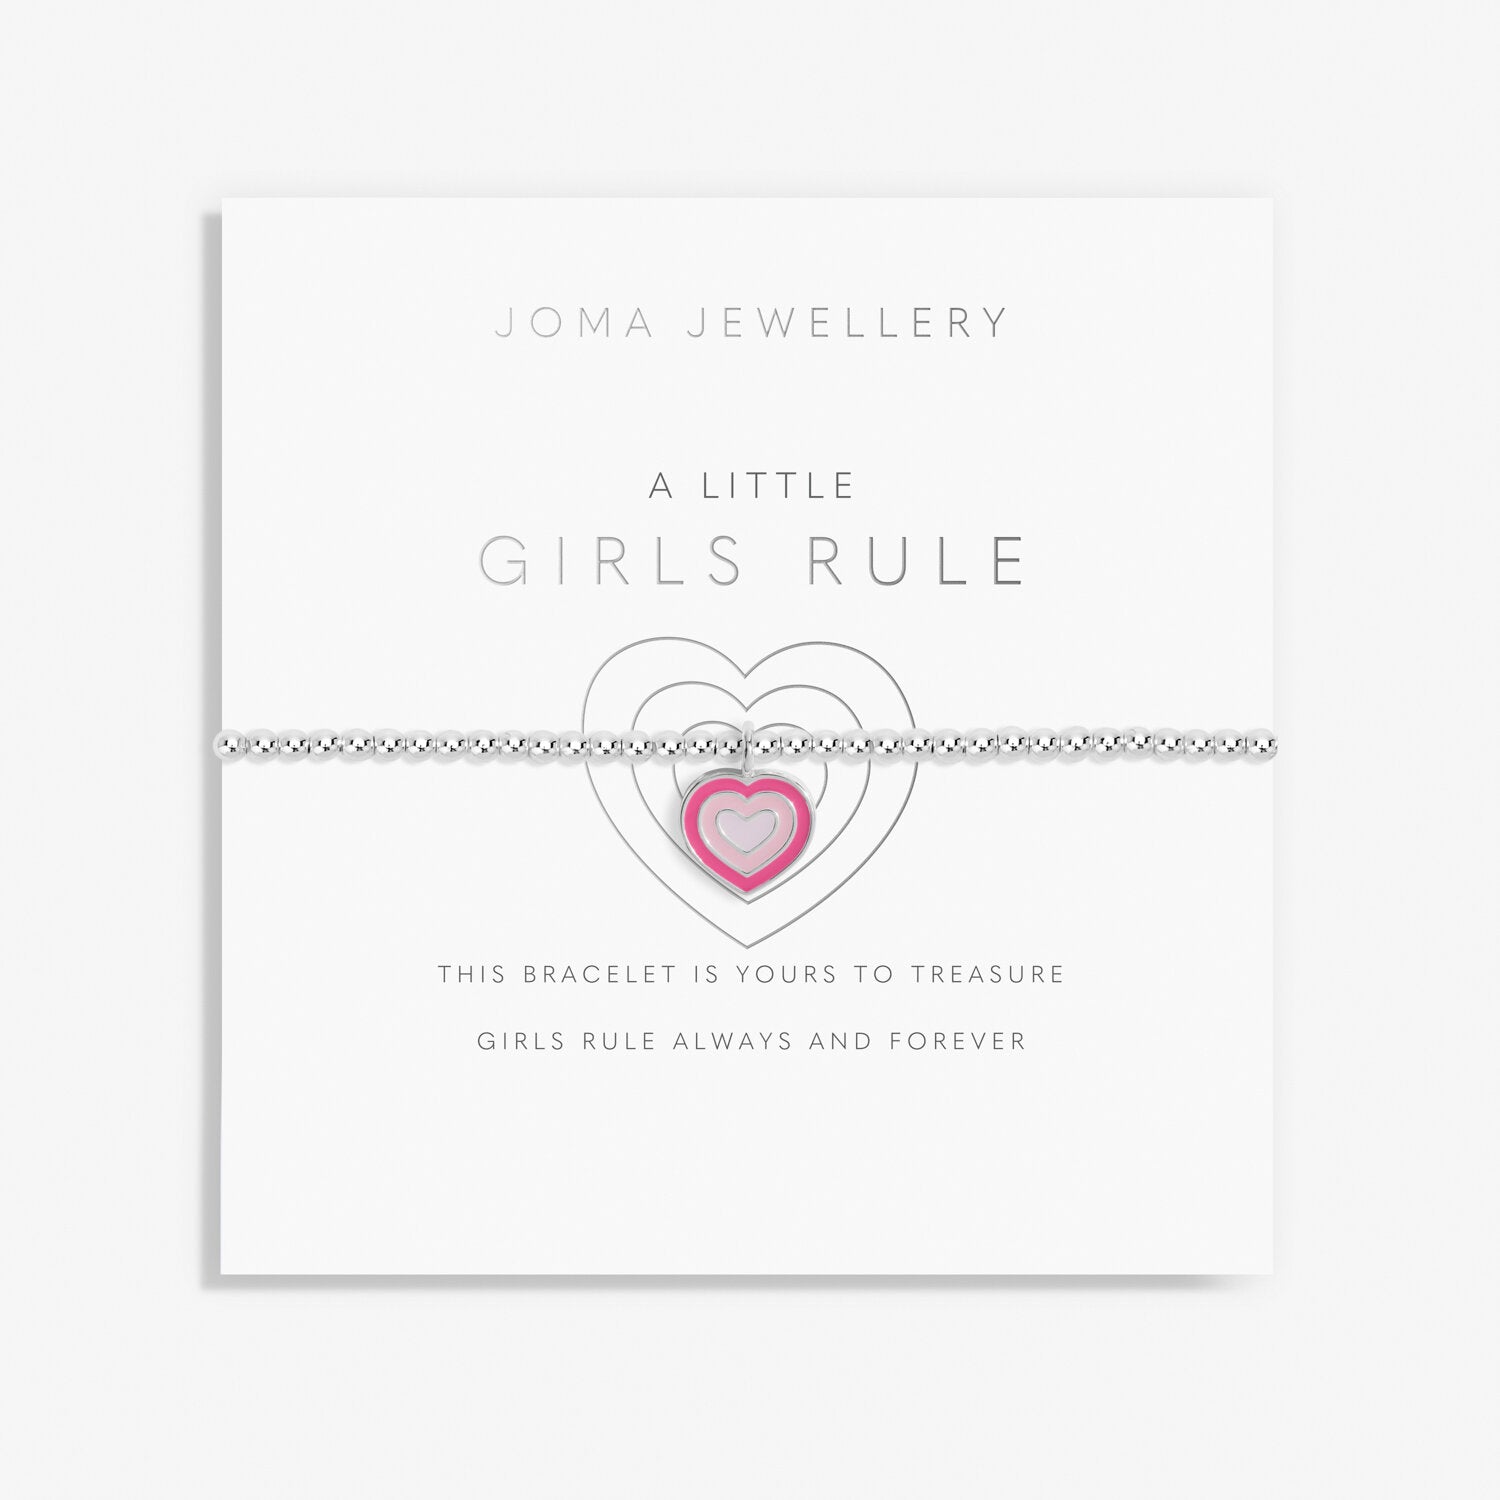 Children's A Little bracelet - Girls Rule - Joma Jewellery